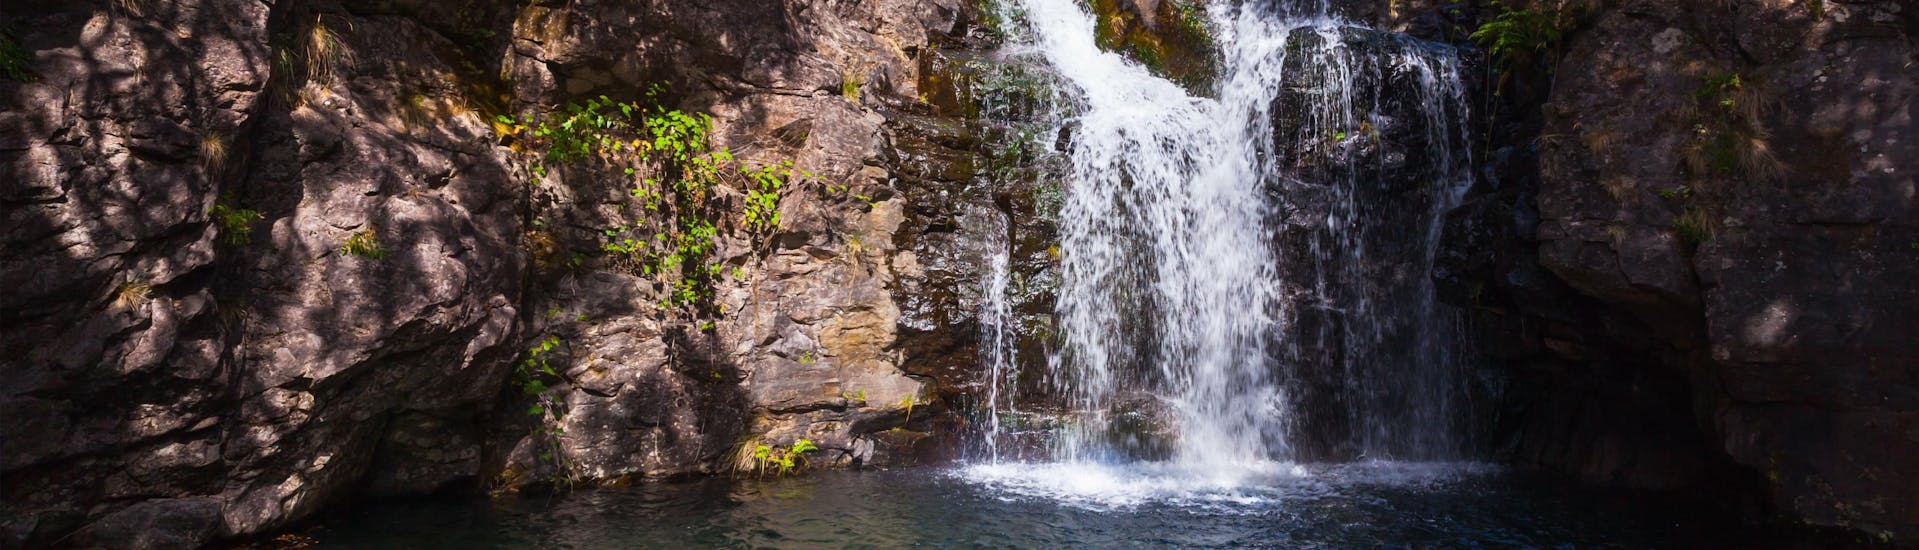 Funchal: Een groep jongeren geniet van een wildwateravontuur in een van de hotspots voor rafting en canyoning.